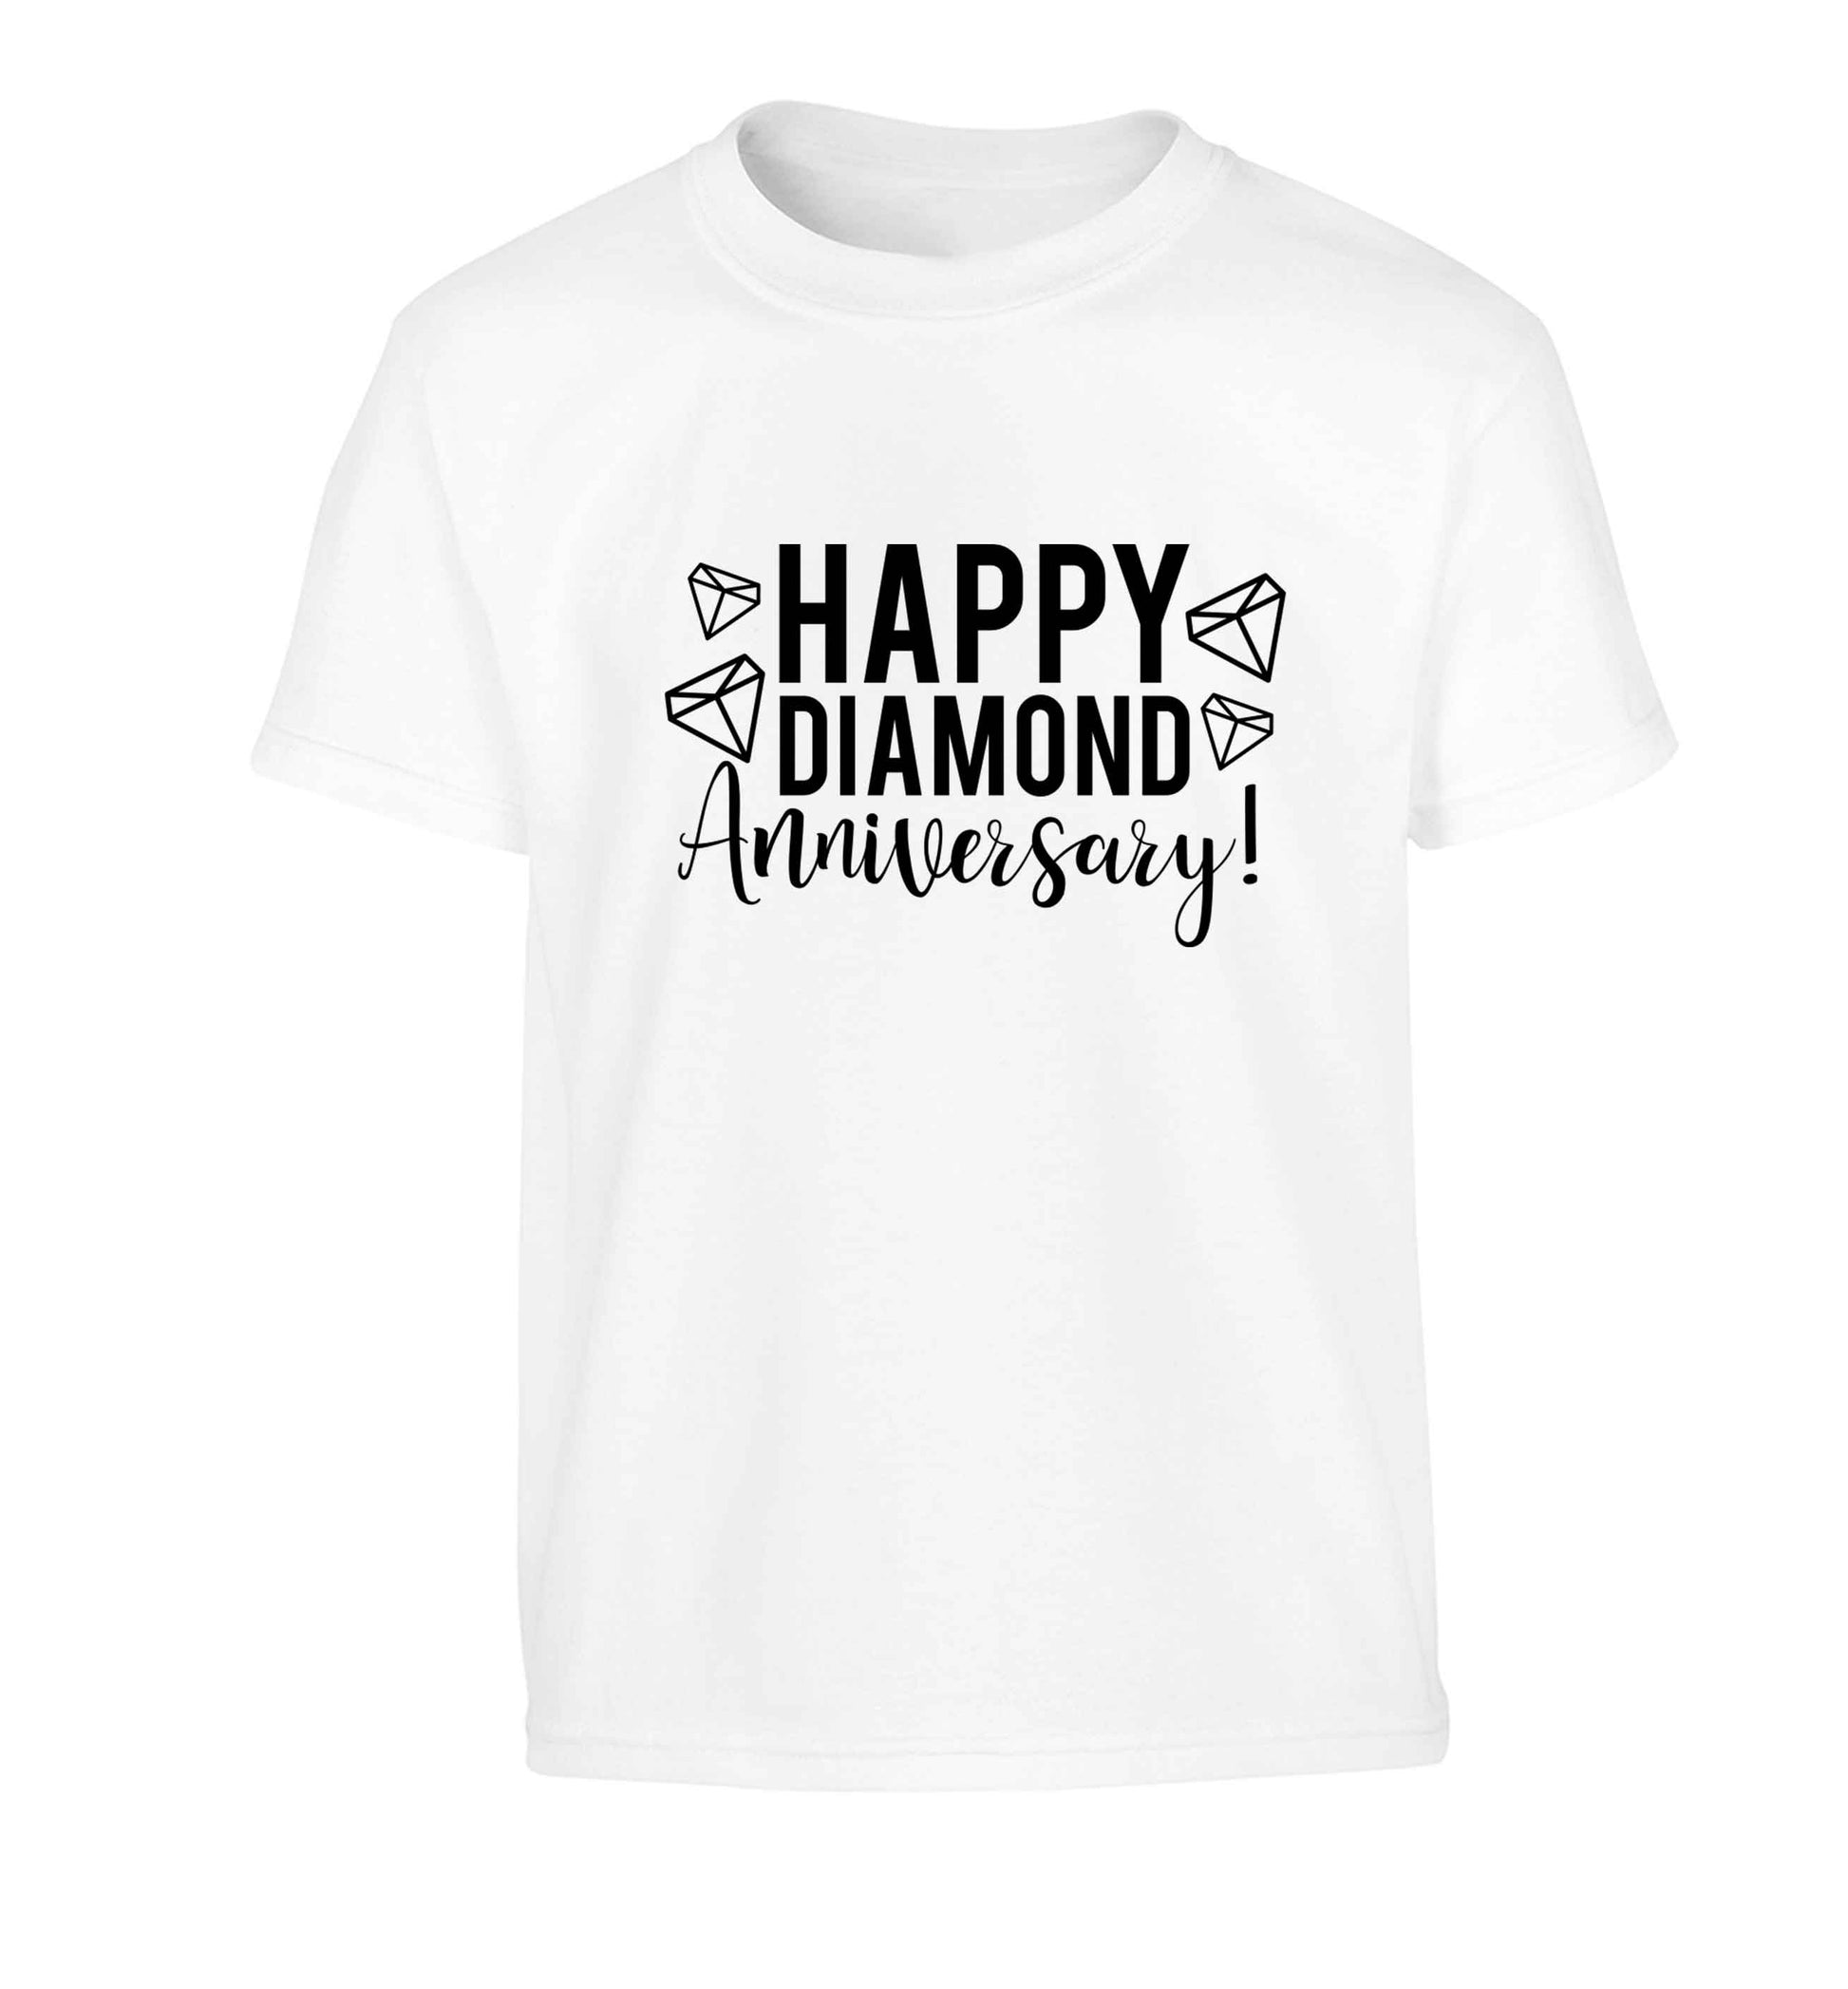 Happy diamond anniversary! Children's white Tshirt 12-13 Years